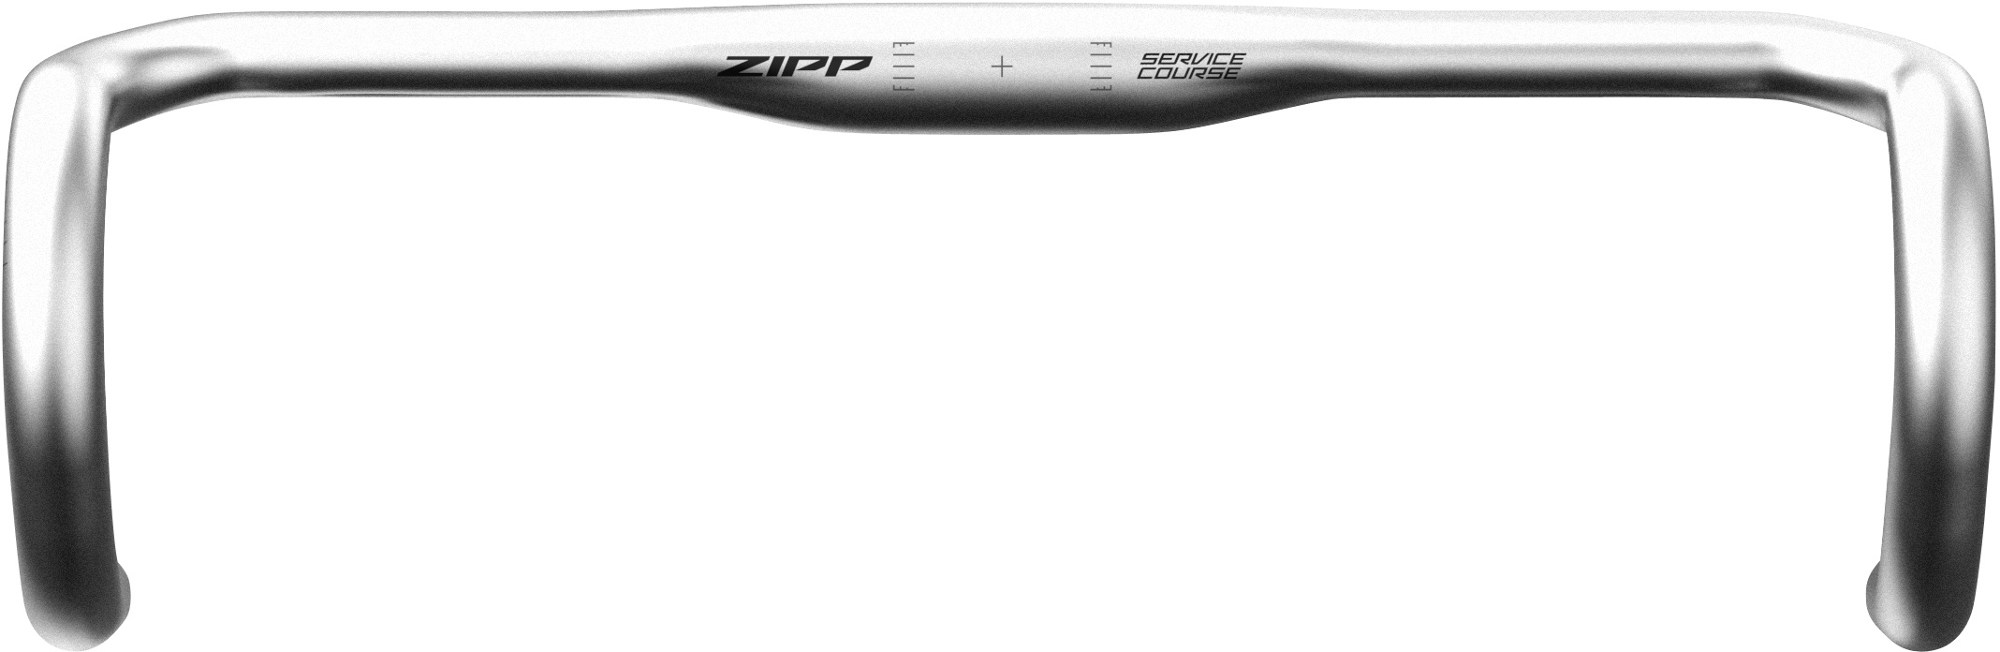 Курс обслуживания 70 Руль Ergo Drop Zipp, серый аэро руль sl 70 zipp черный